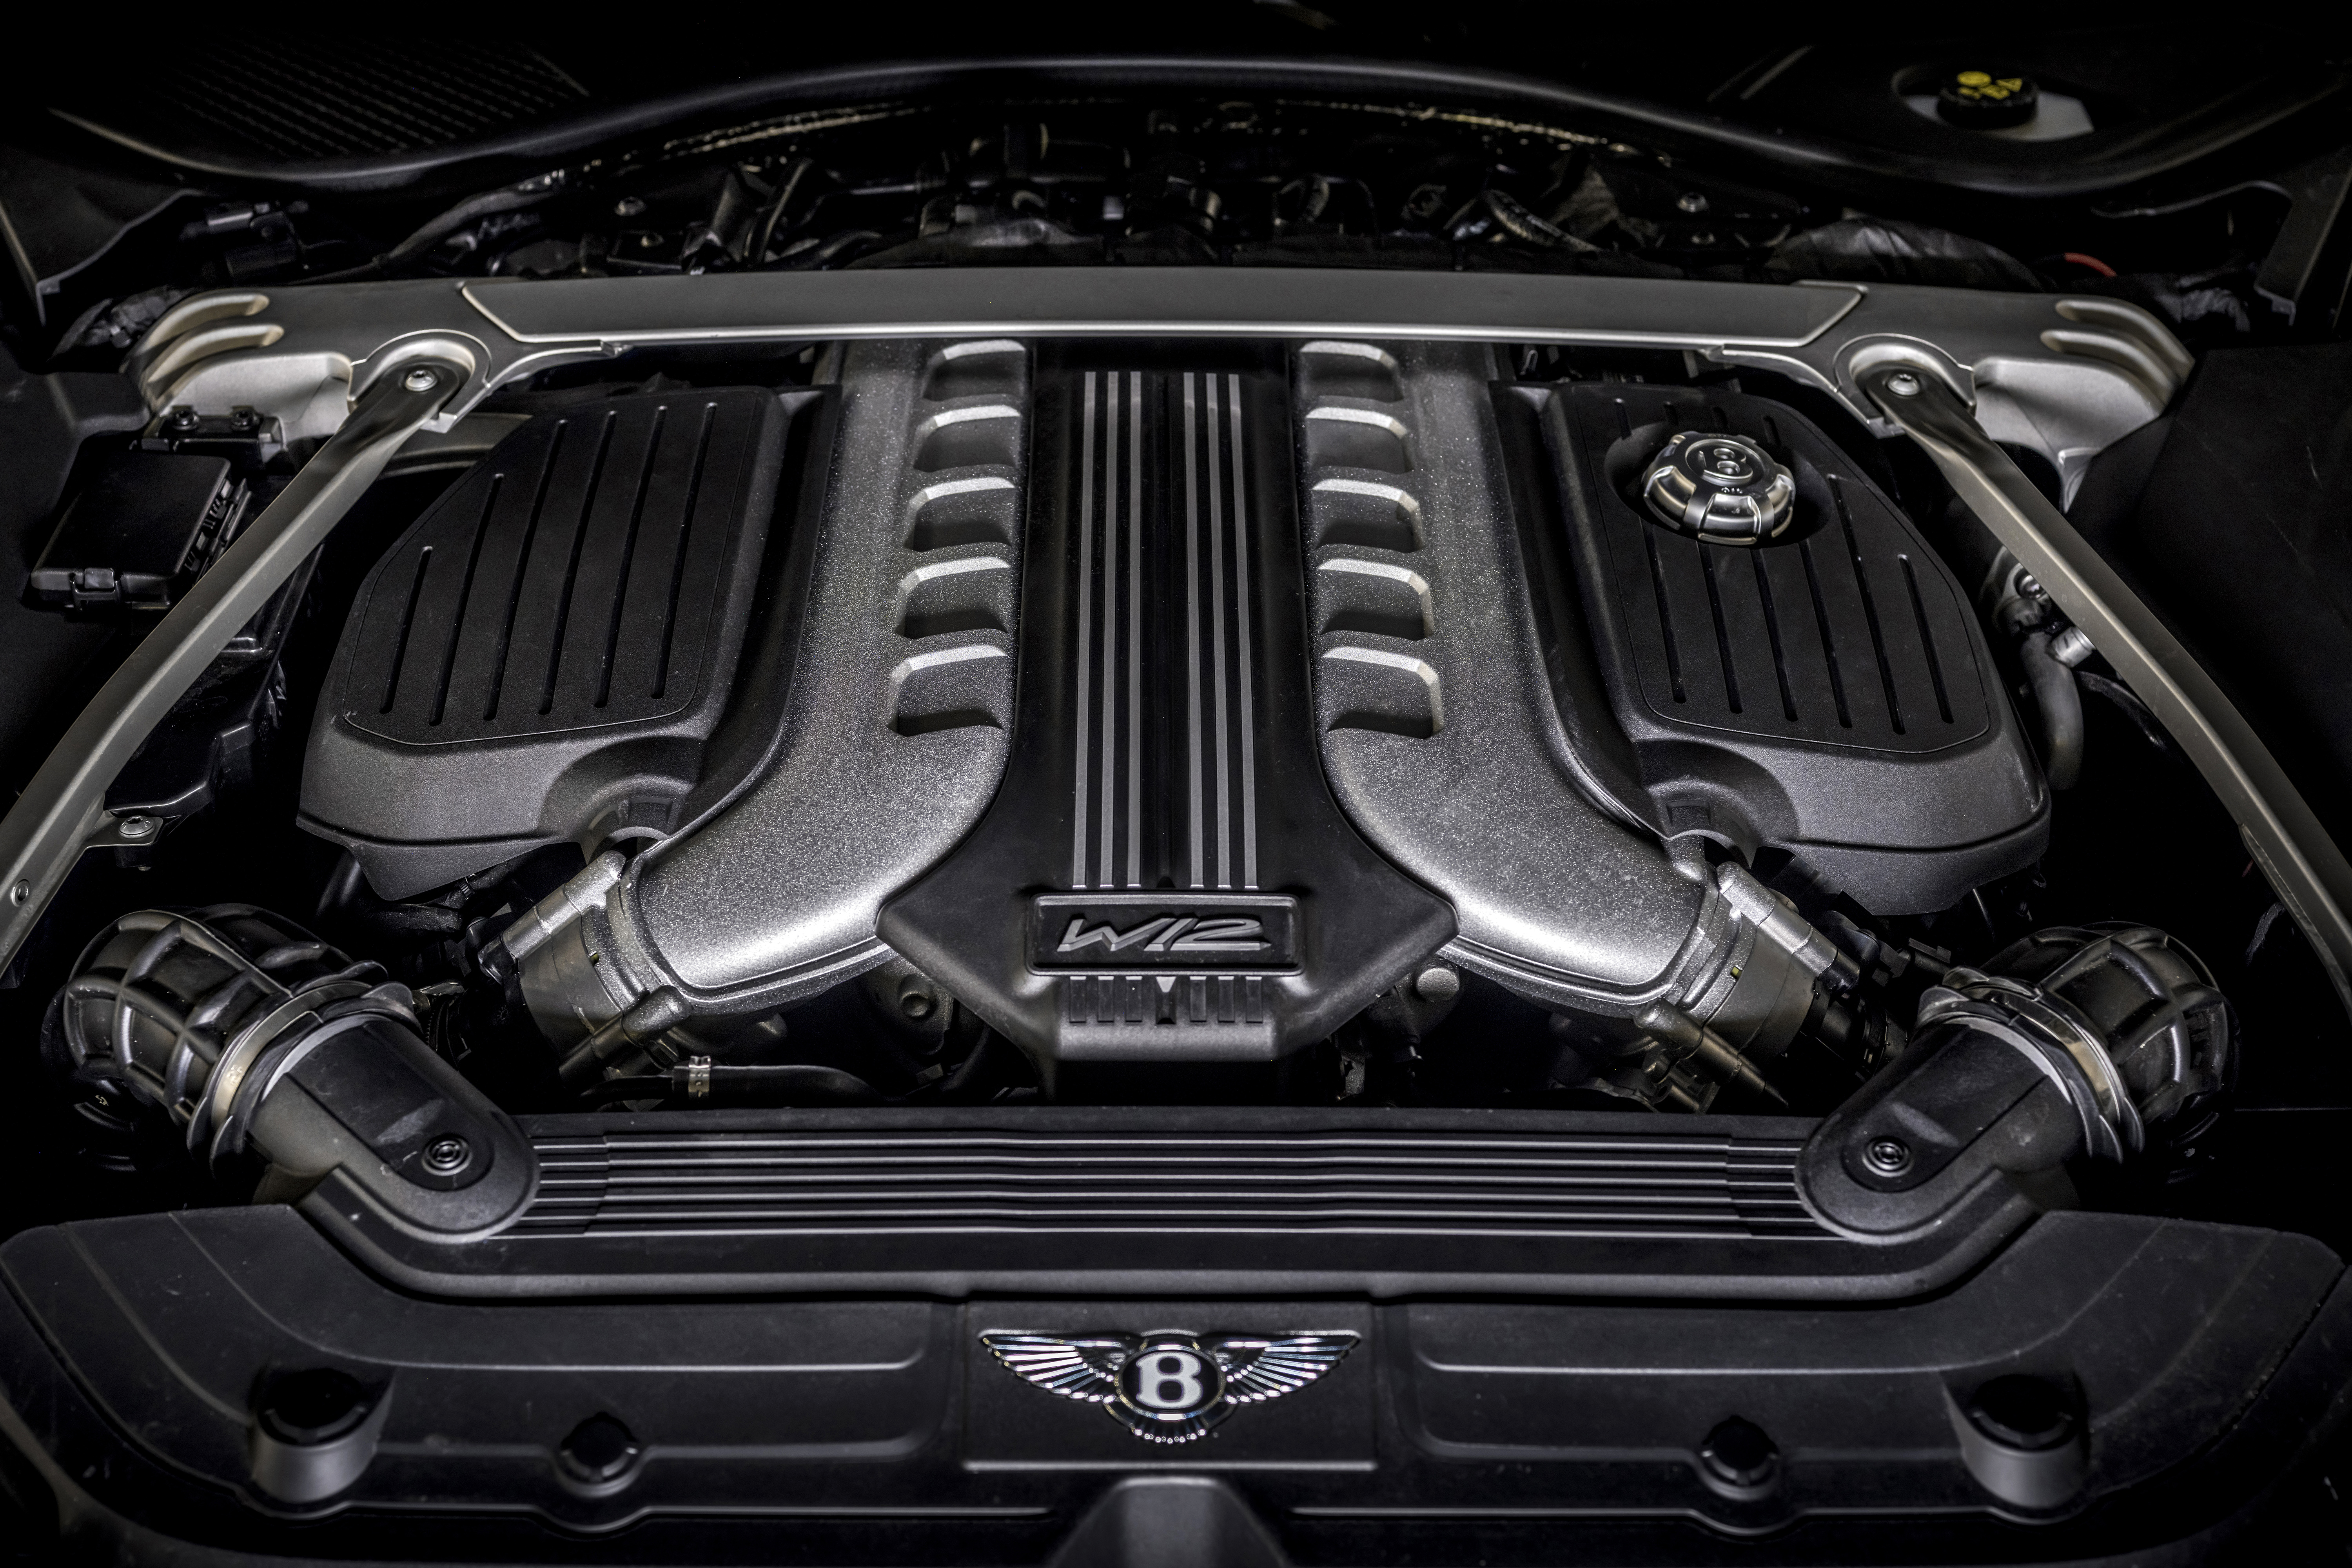 Bentley's W12 engine